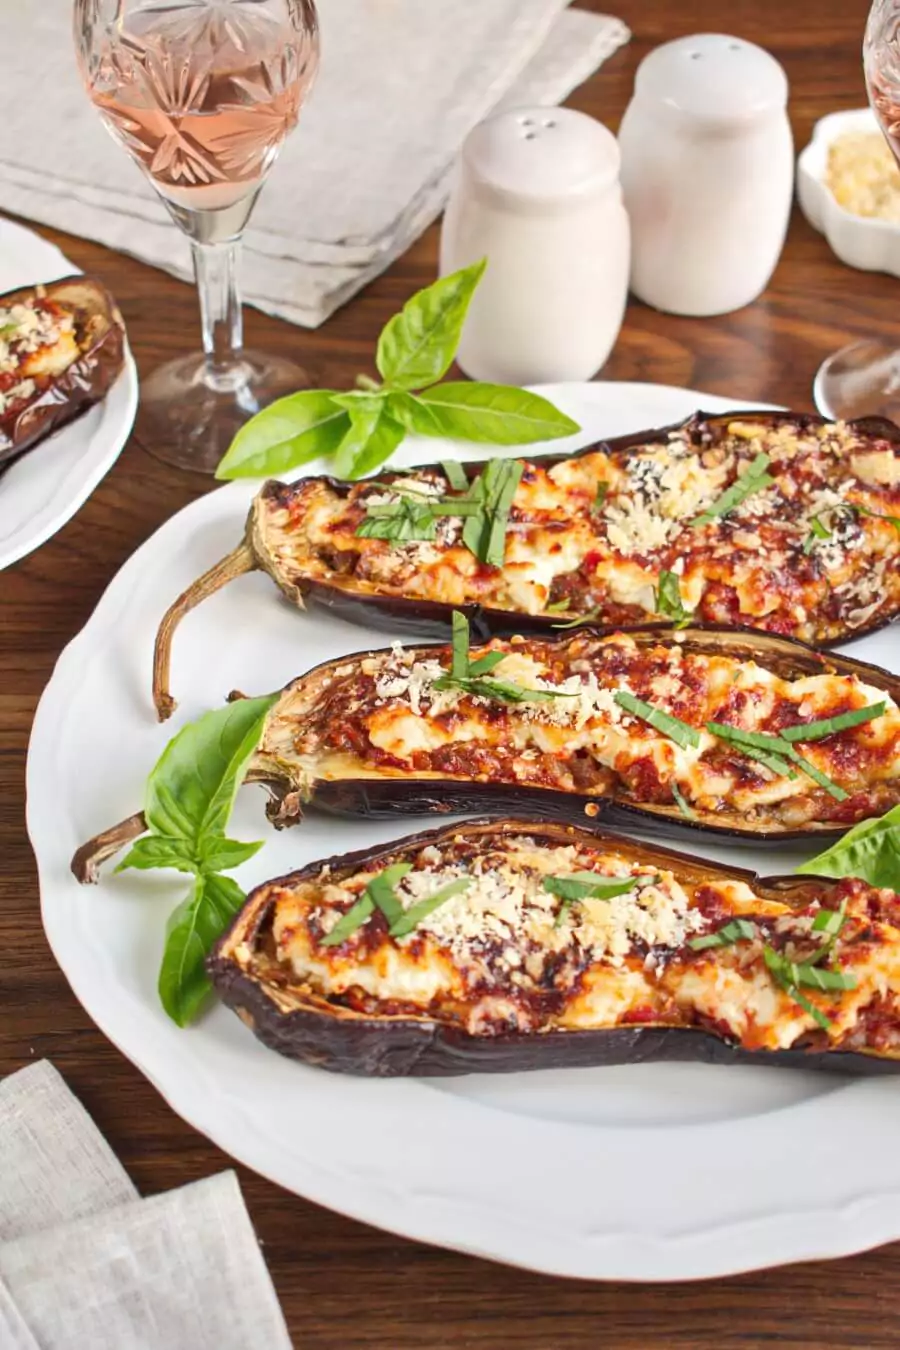 Italian Style Stuffed Eggplant Recipe - Cook.me Recipes